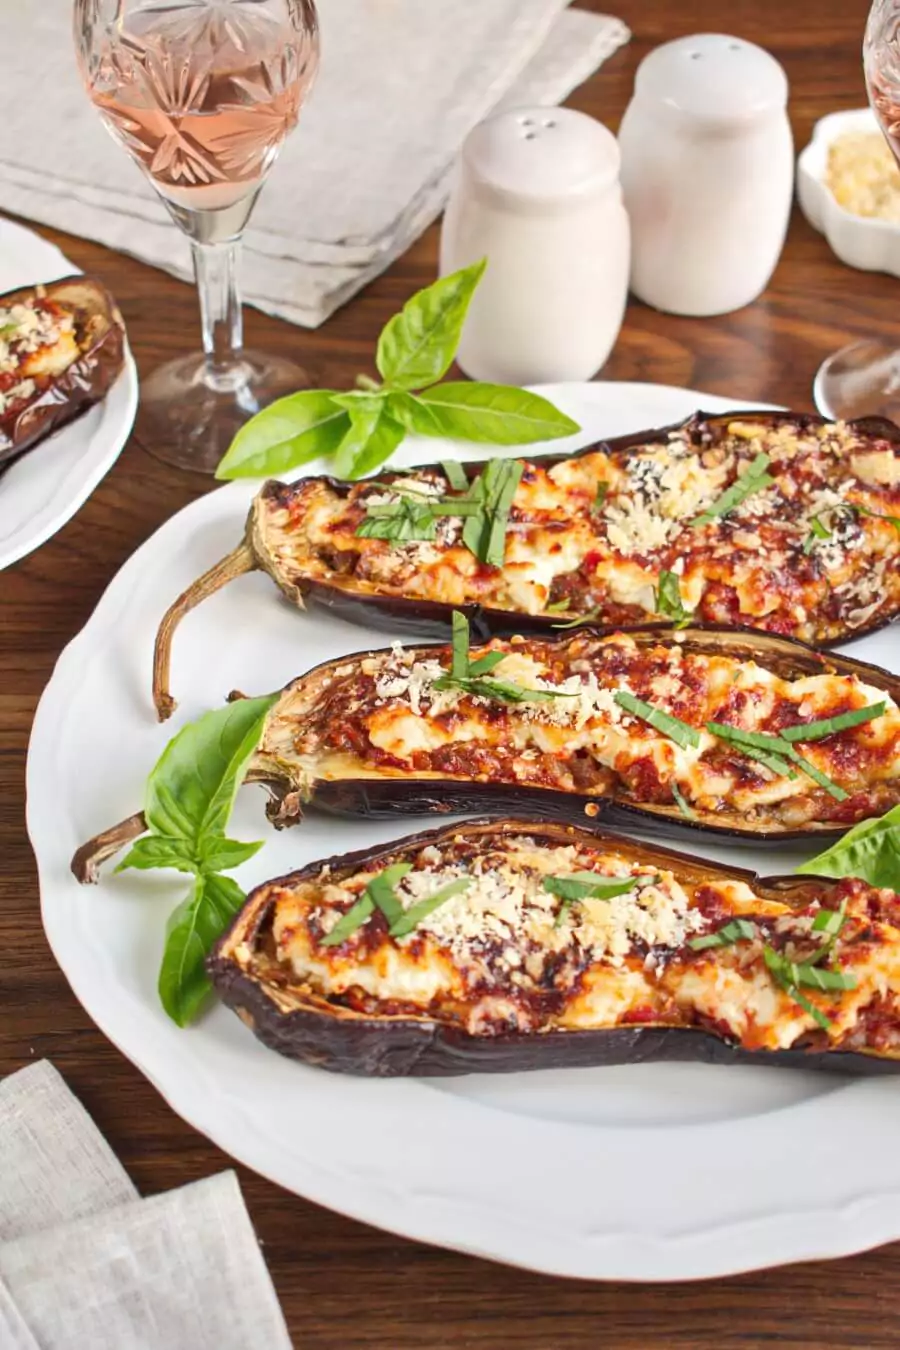 Italian Style Stuffed Eggplant Recipe - Cook.me Recipes